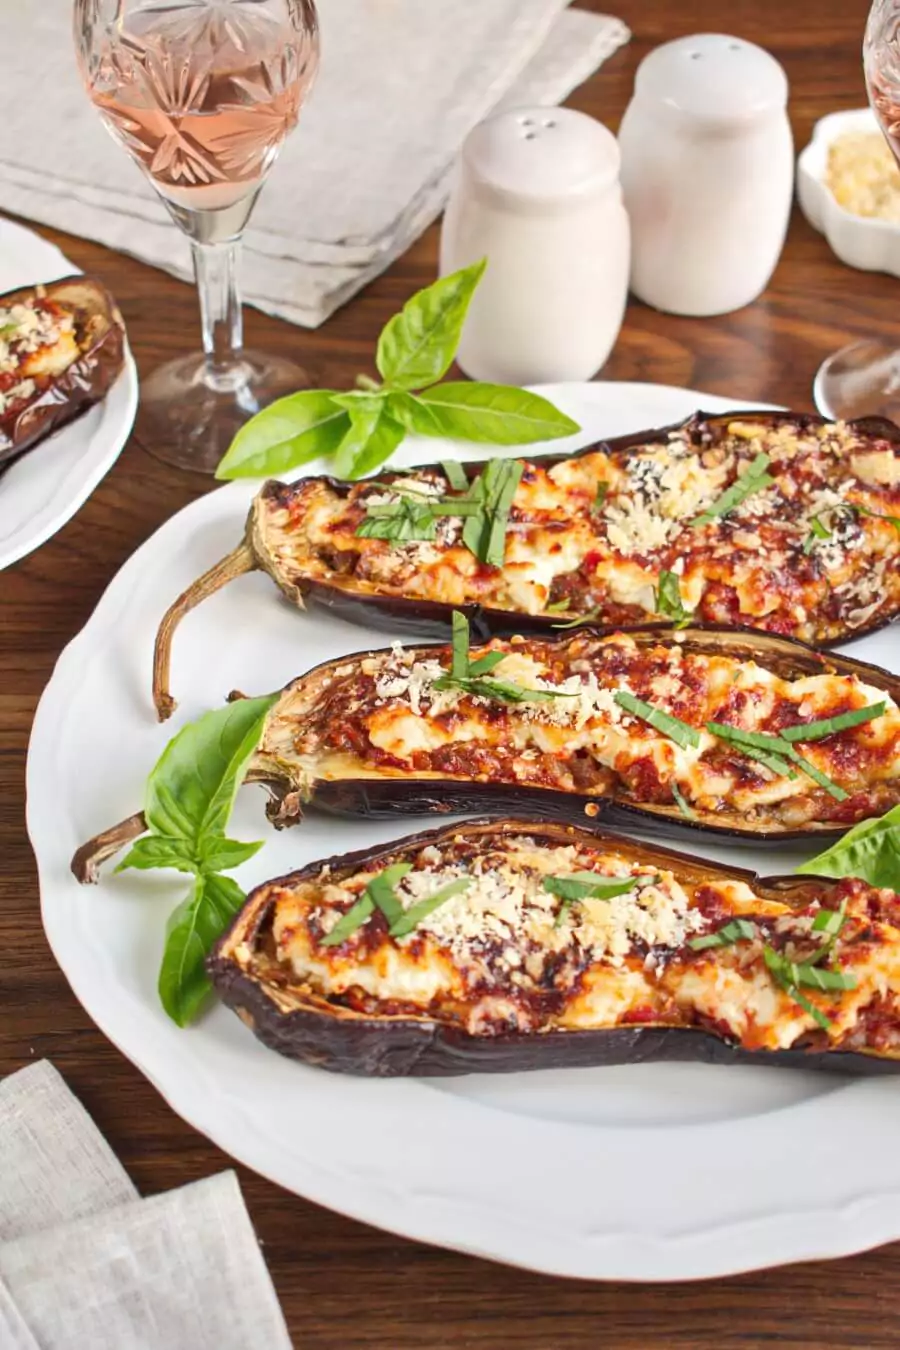 Italian Style Stuffed Eggplant Recipe - Cook.me Recipes